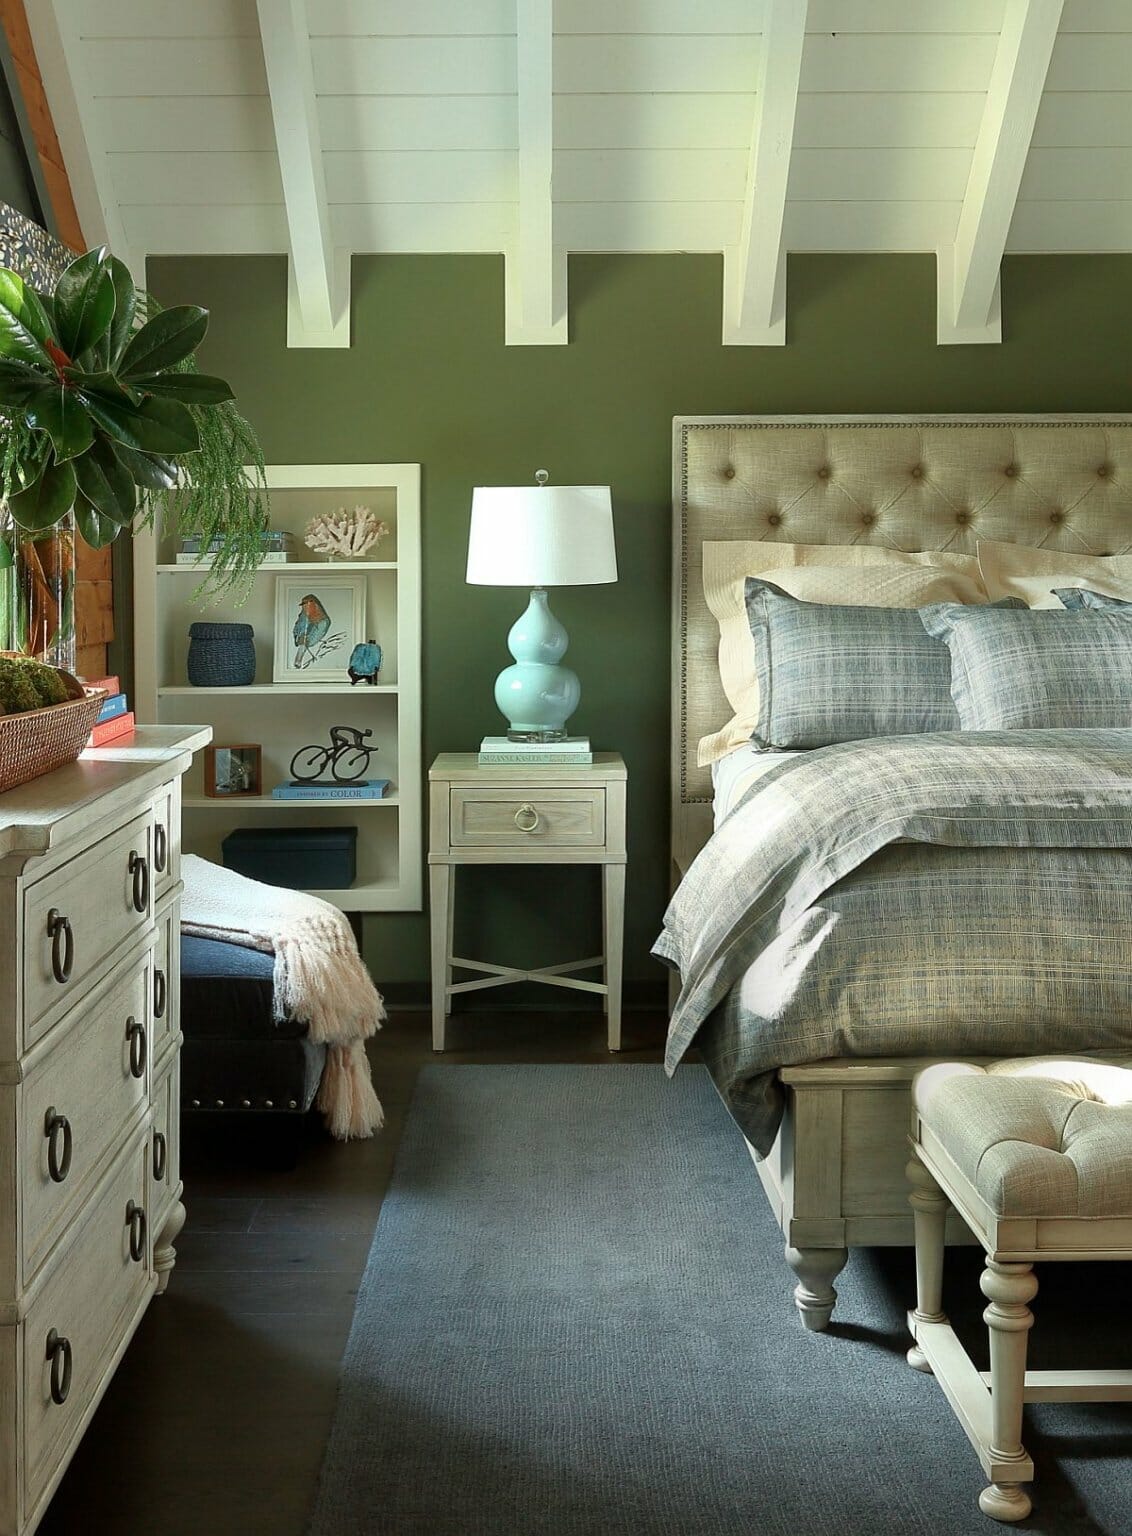 Hình ảnh phòng ngủ truyền thống với màu xanh lá cây kết hợp sắc kem nhã nhặn.